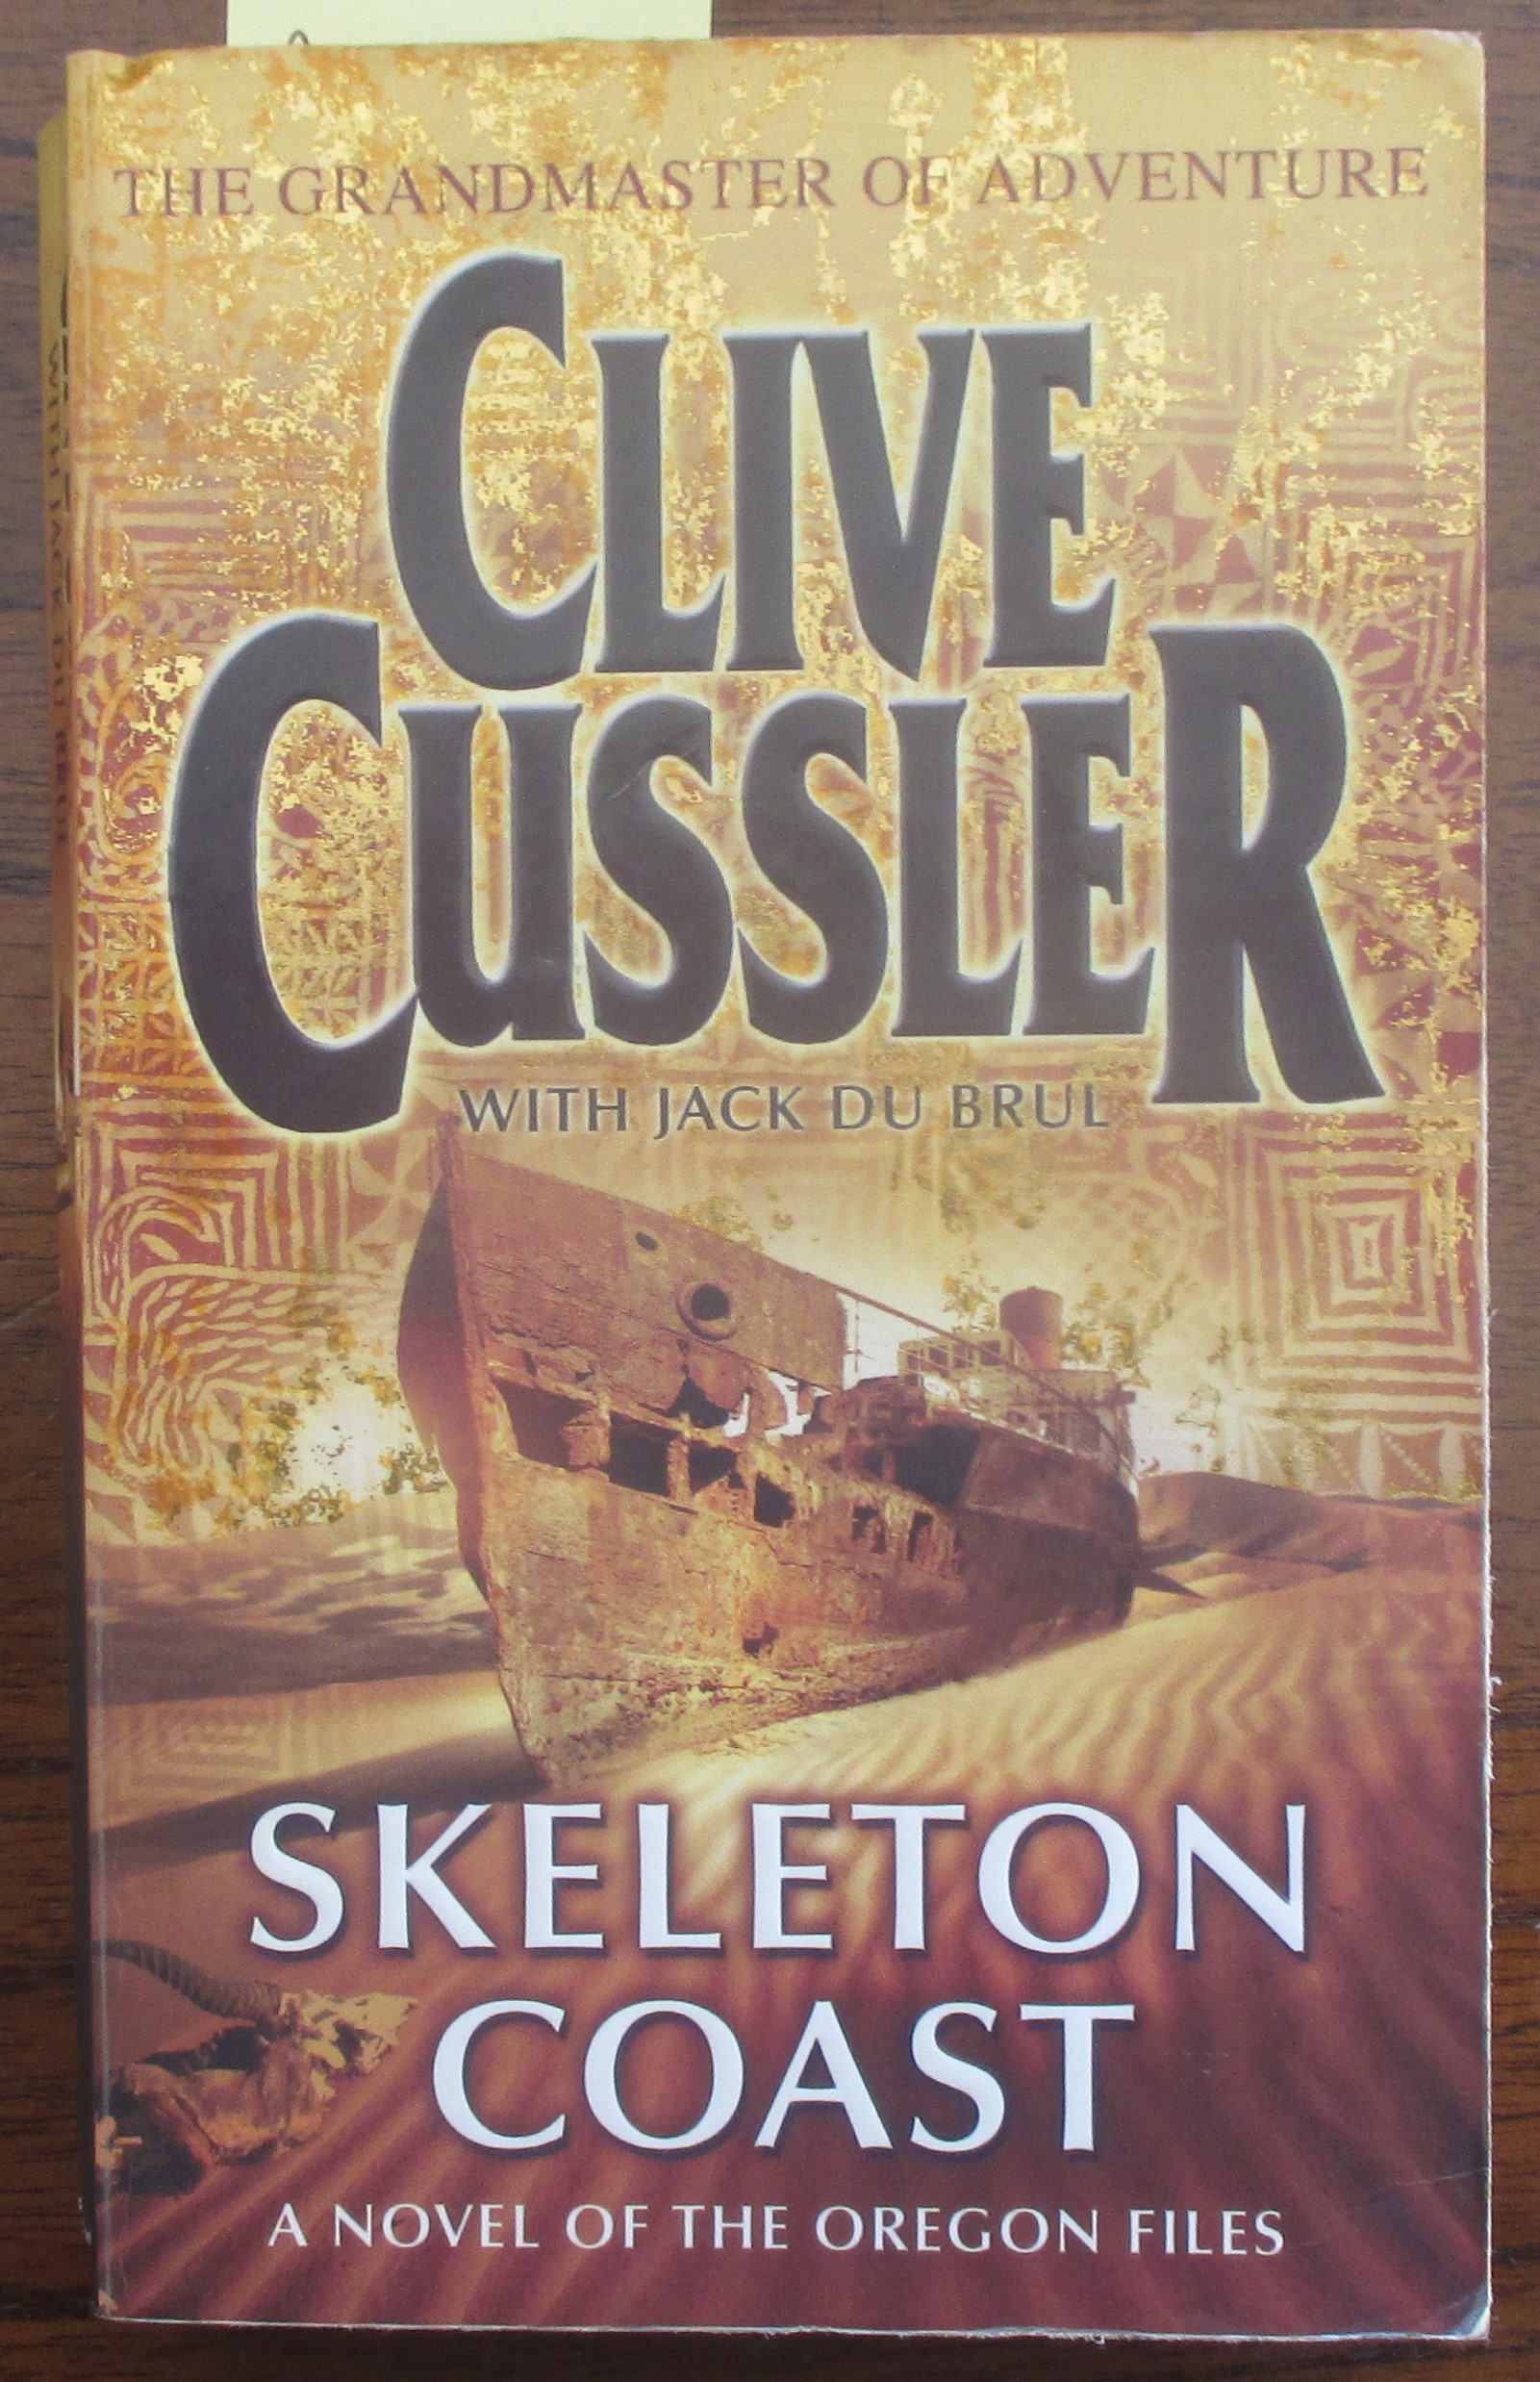 Skeleton Coast - Cussler, Clive; and Du Brul, Jack